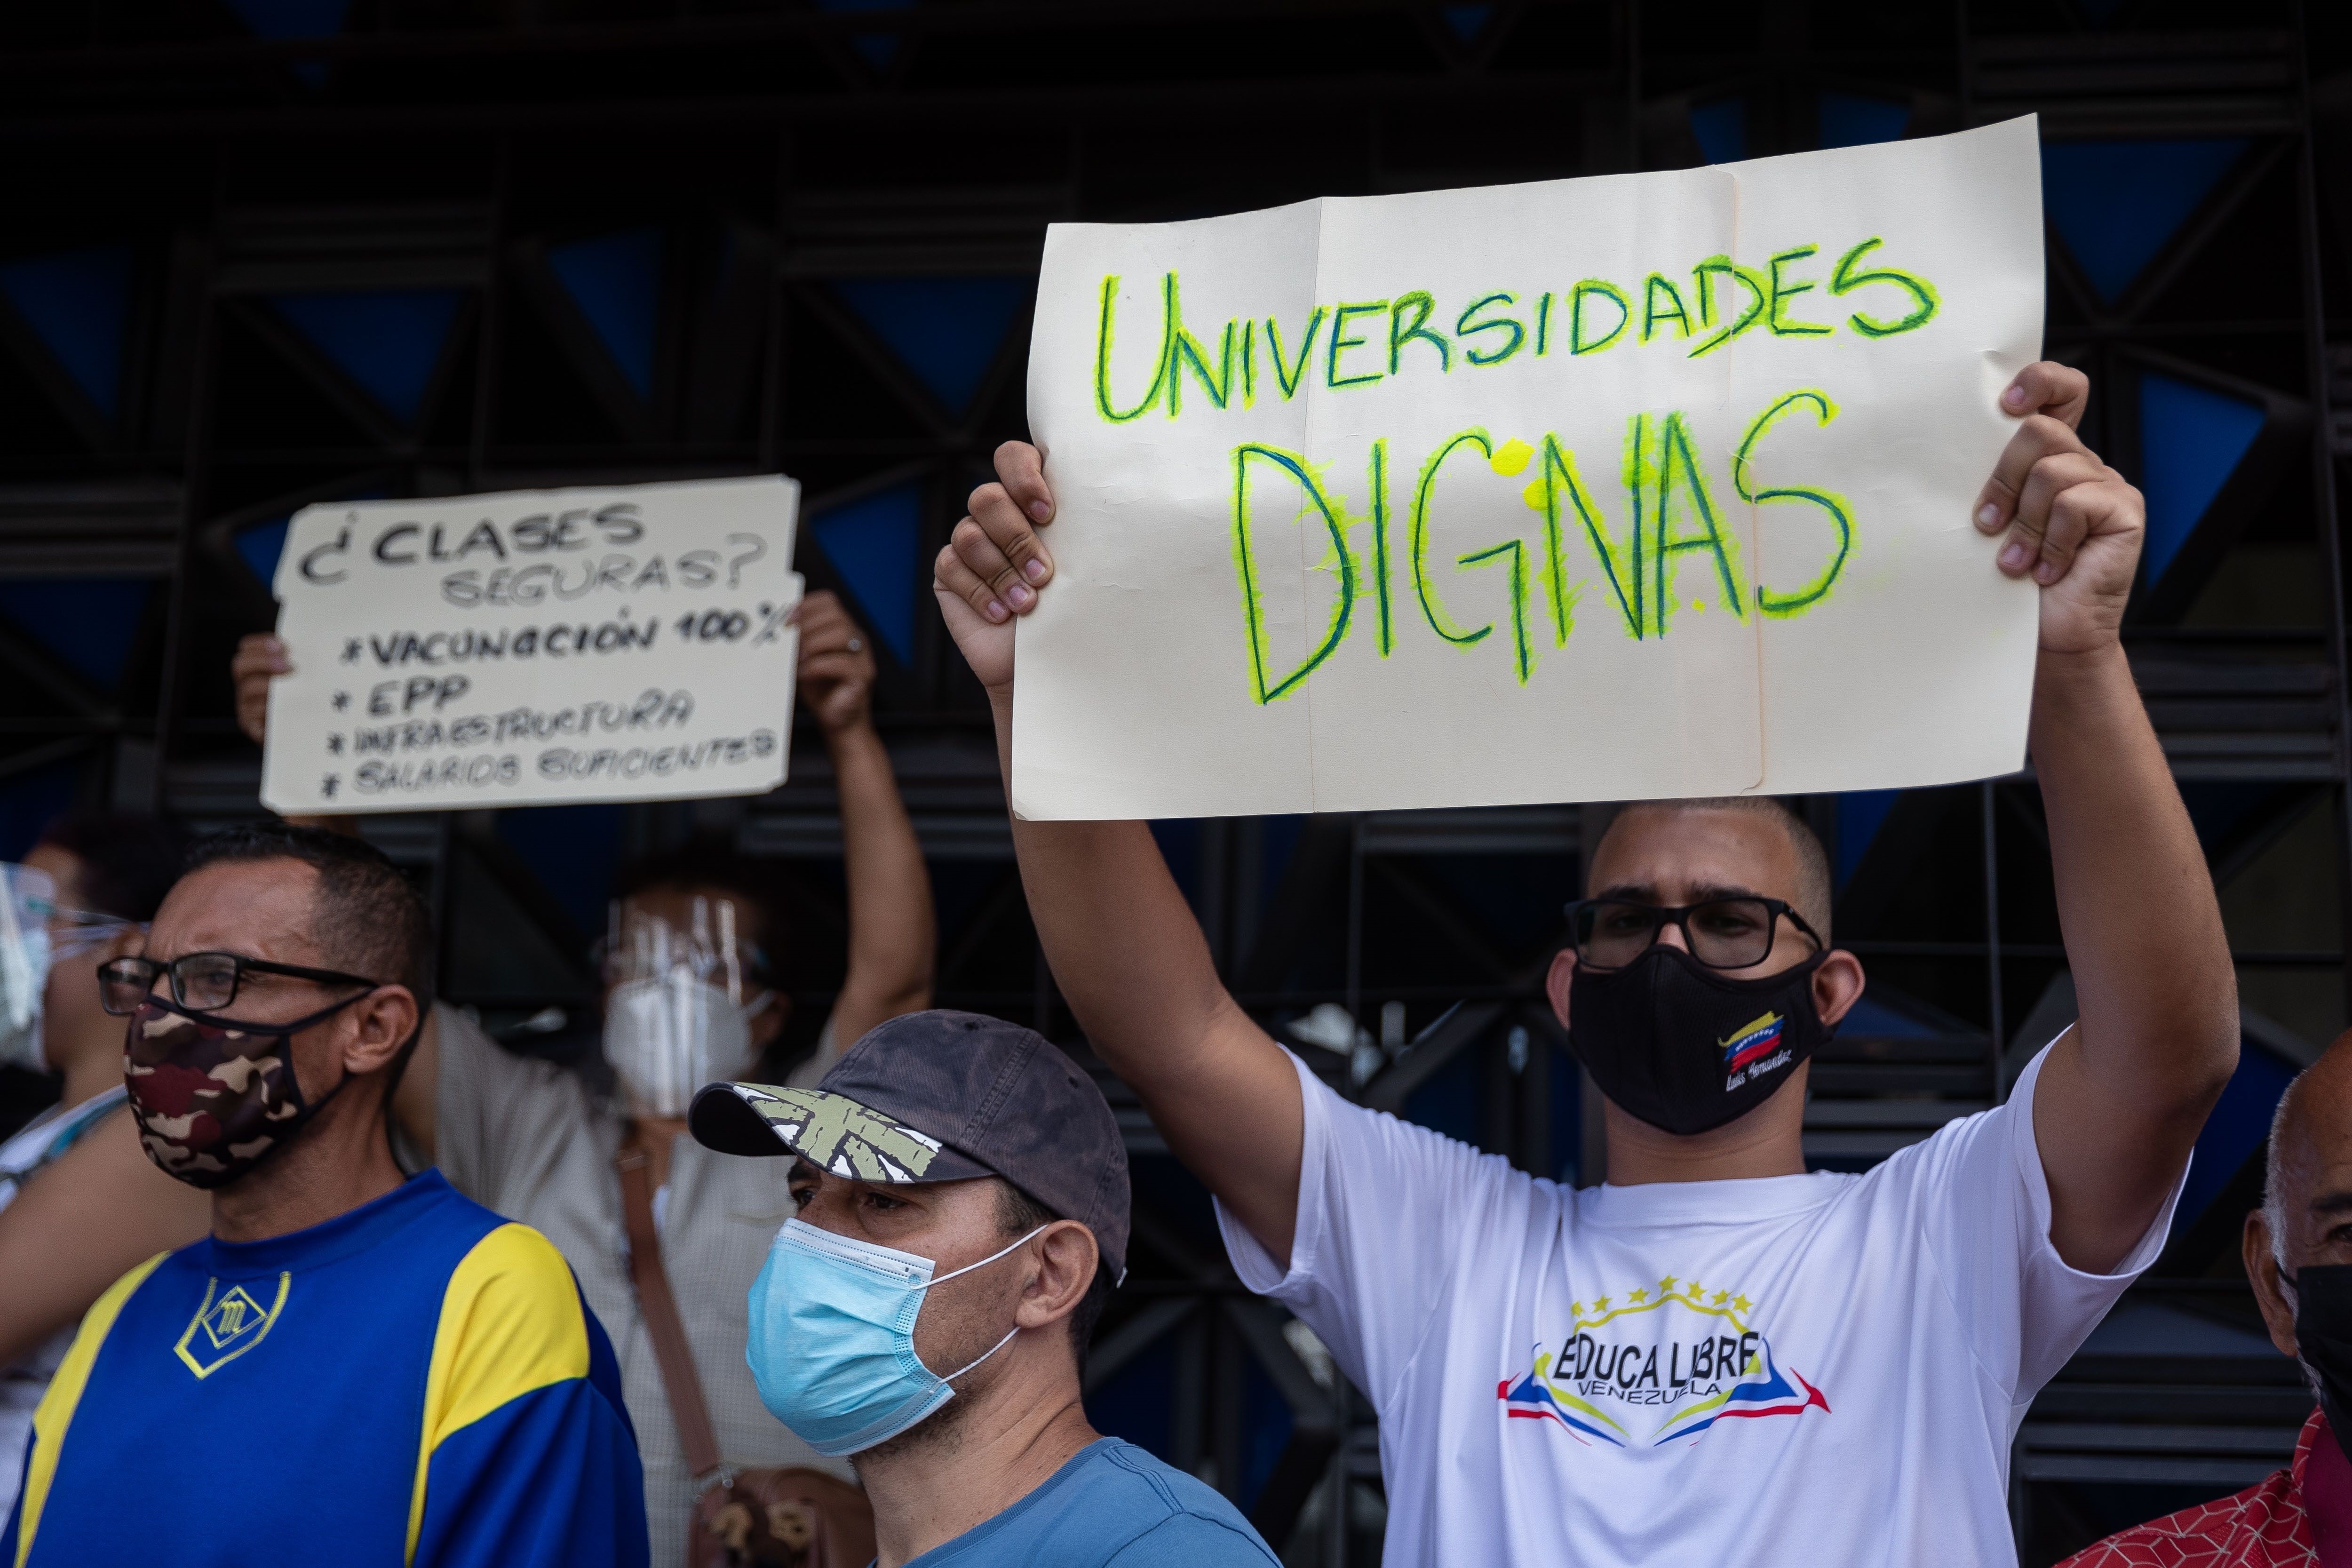 Un hombre carga una pancarta que dice "Universidades dignas" durante una protesta por mejores condiciones laborales frente al Ministerio de Educación en Caracas (EFE/Rayner Peña)
